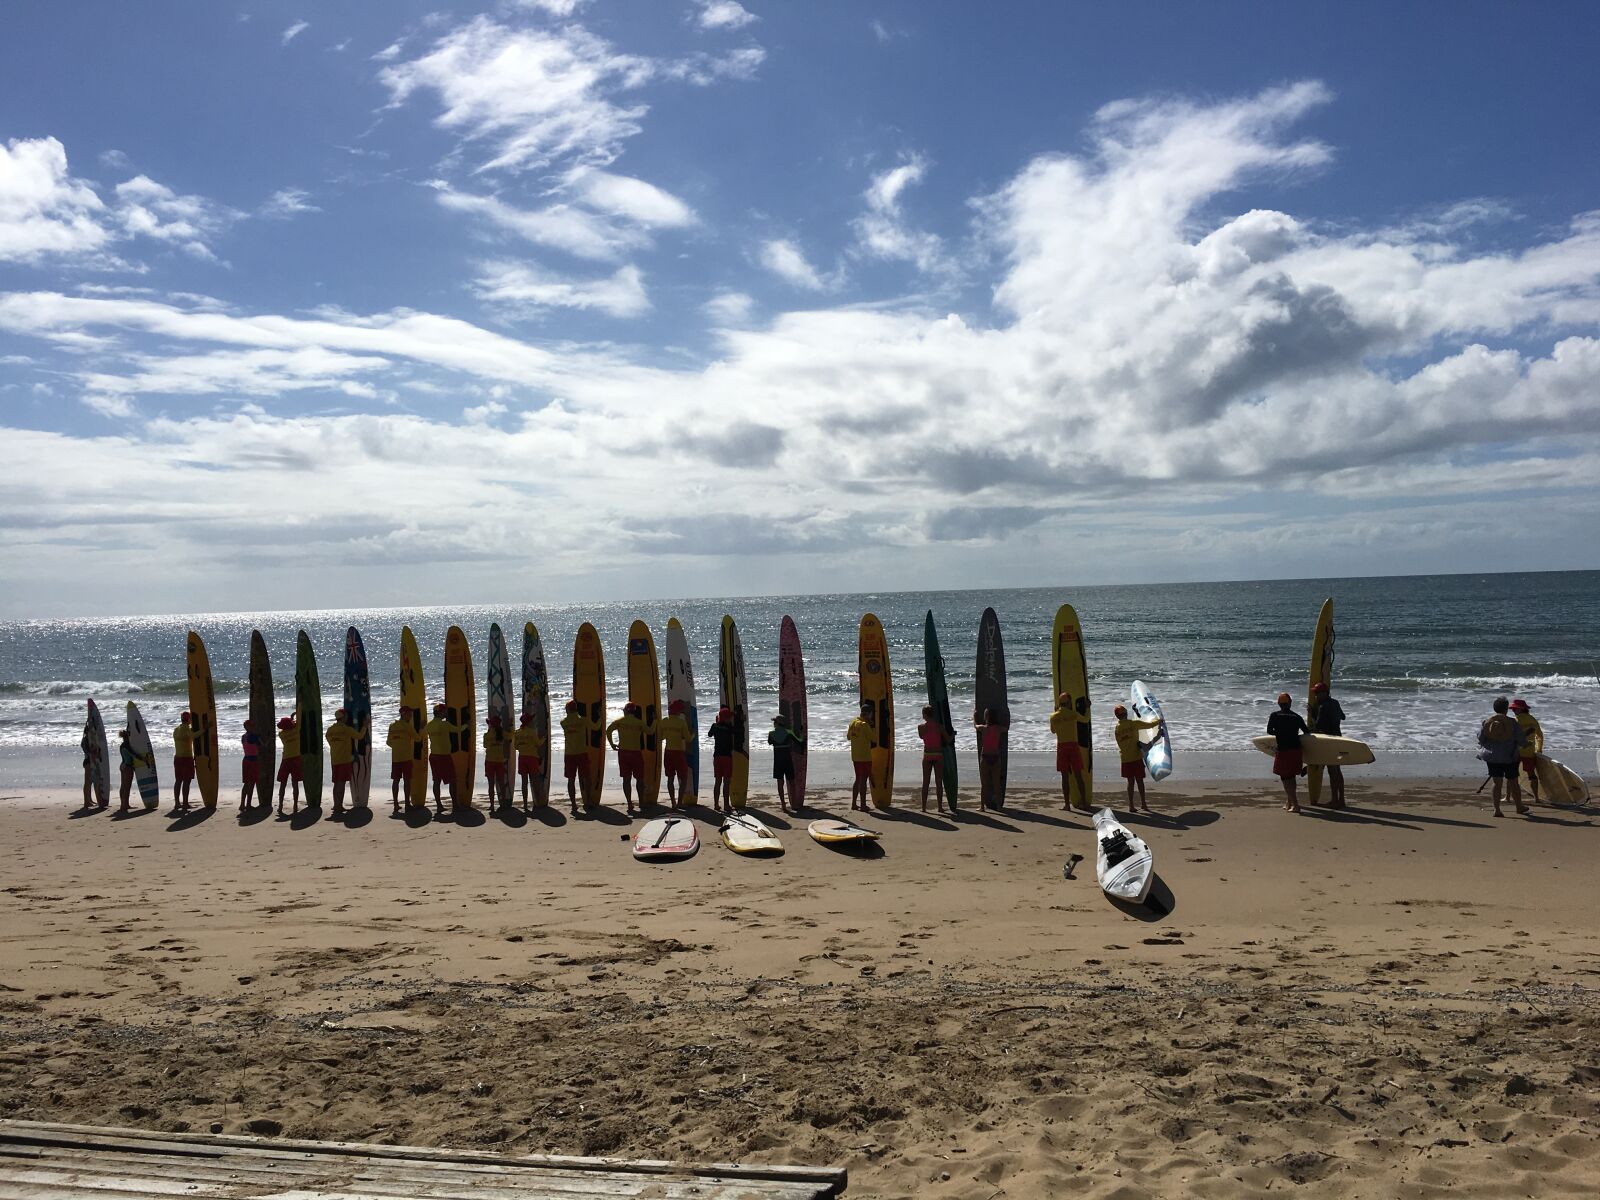 Apple iPhone 6s sample photo. Beach, beach, art, surf photography